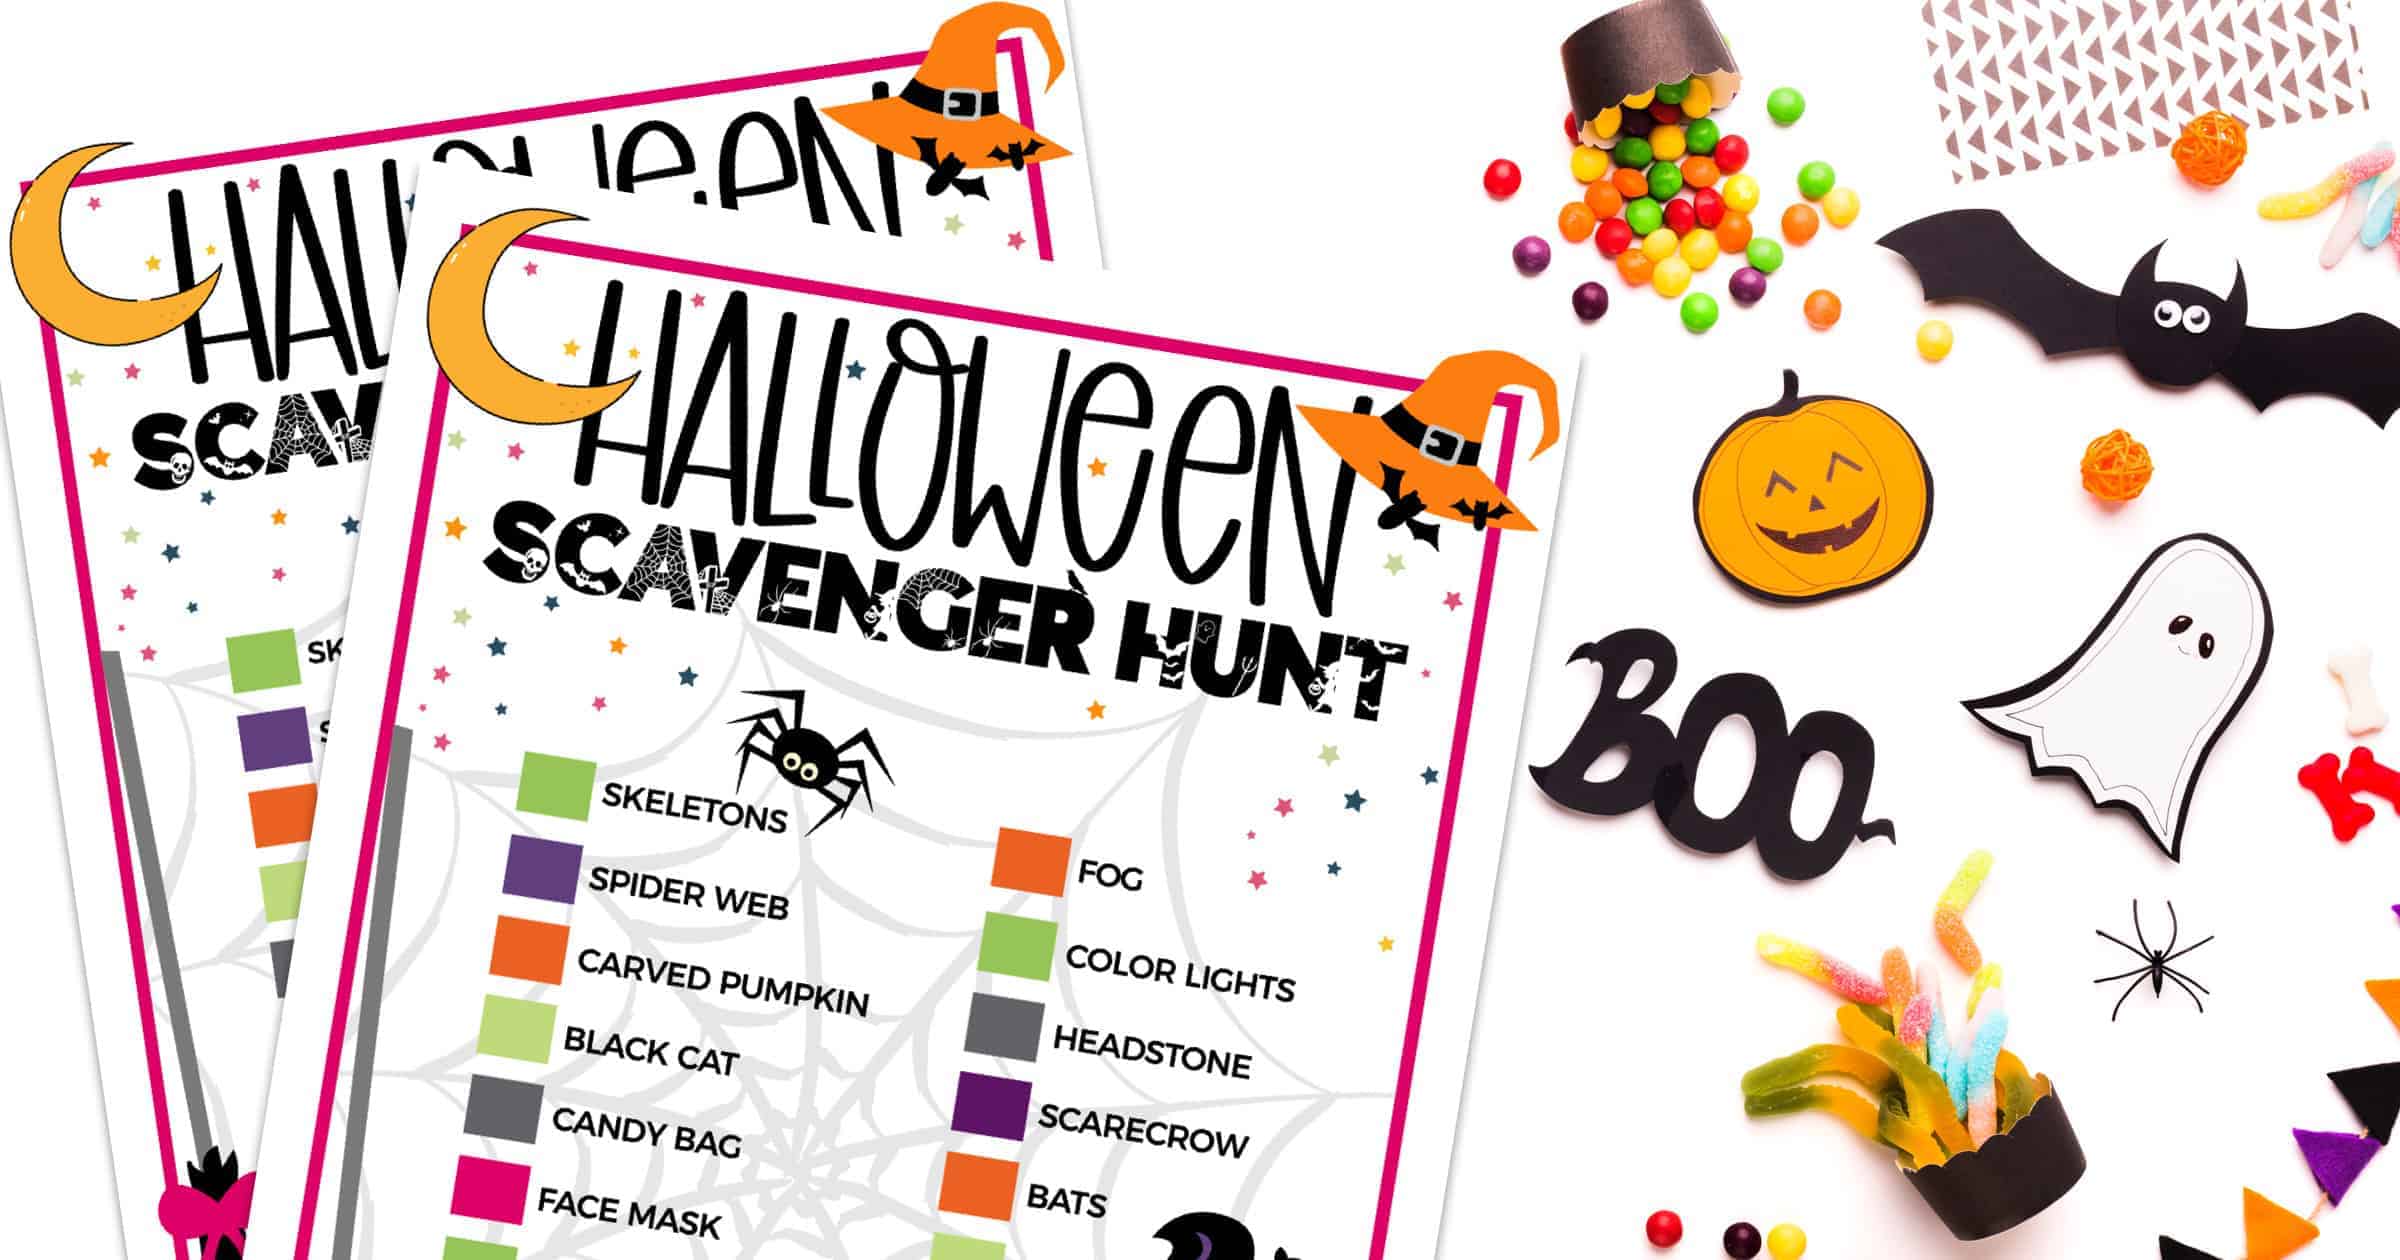 Halloween Scavenger Hunt for kids